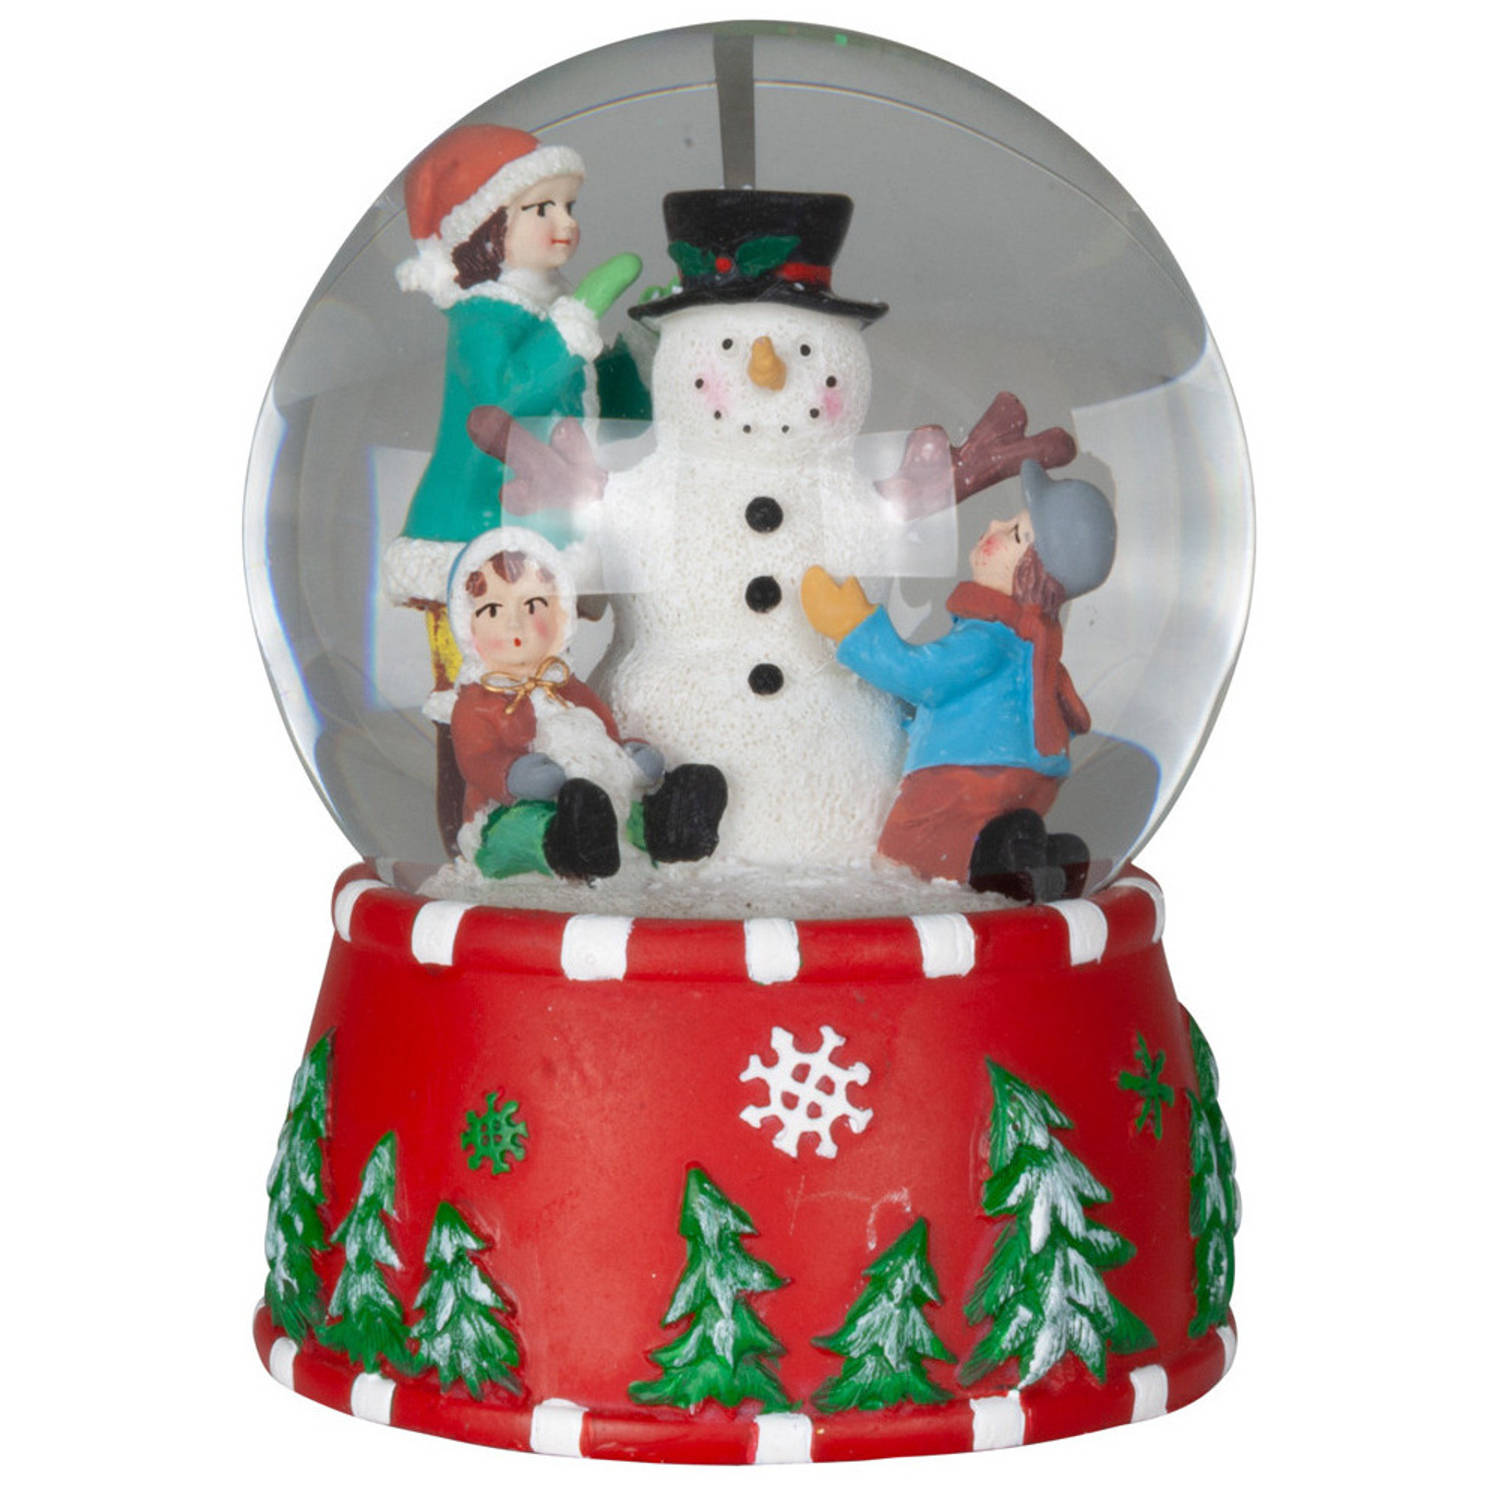 Sneeuwbol/snowglobe - rood - met kerstman - 15 cm - met muziek